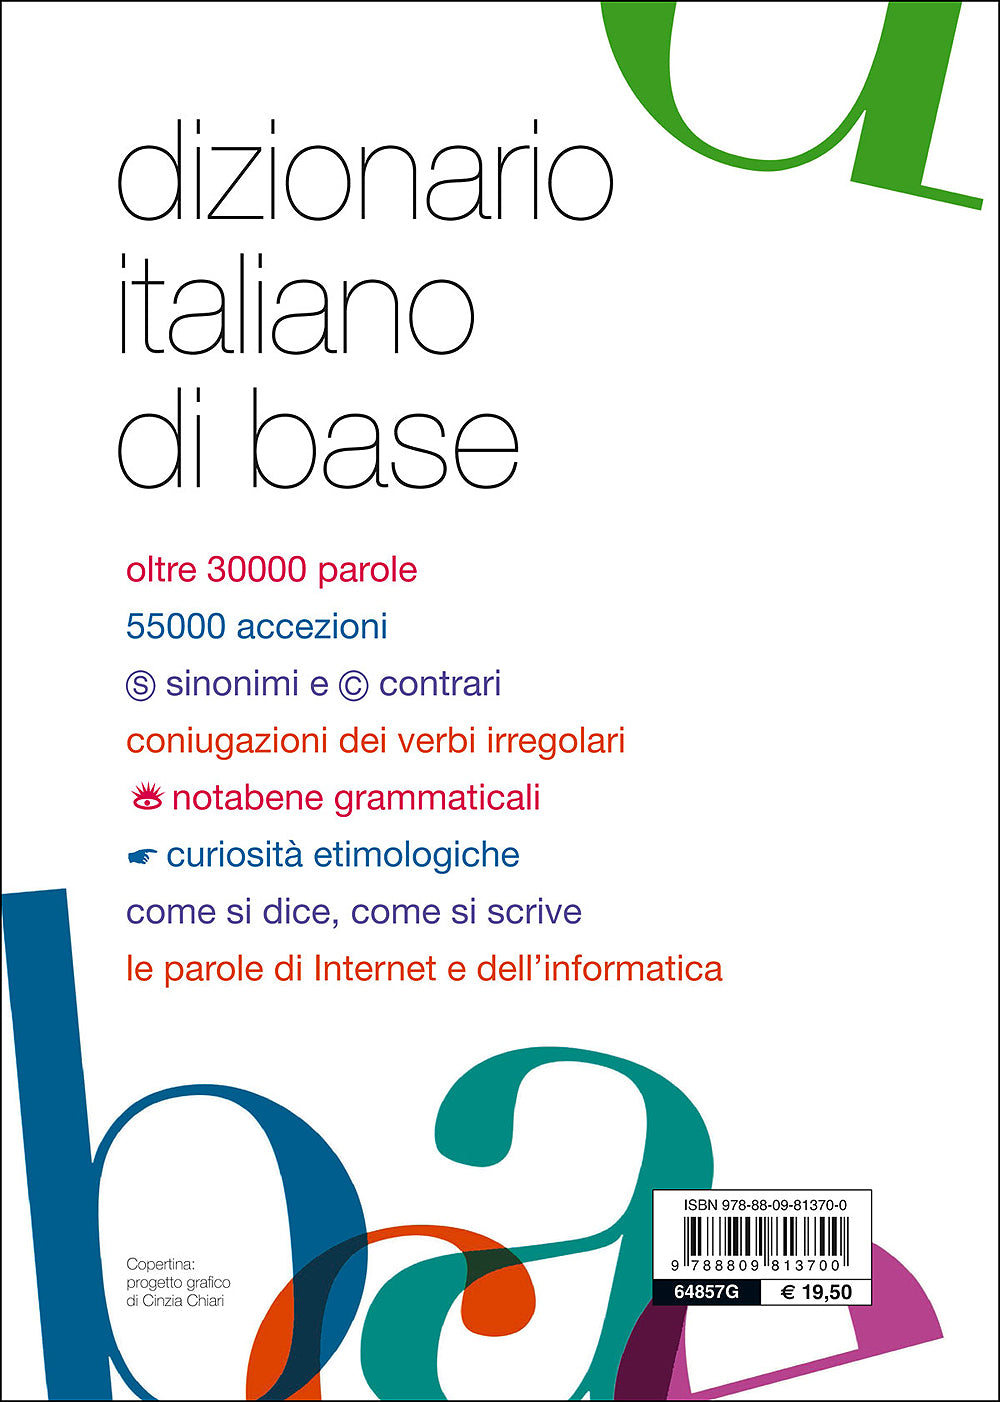 Dizionario italiano di base::Oltre 30000 parole, 55000 accezioni, sinonimi e contrari, tutti i verbi irregolari